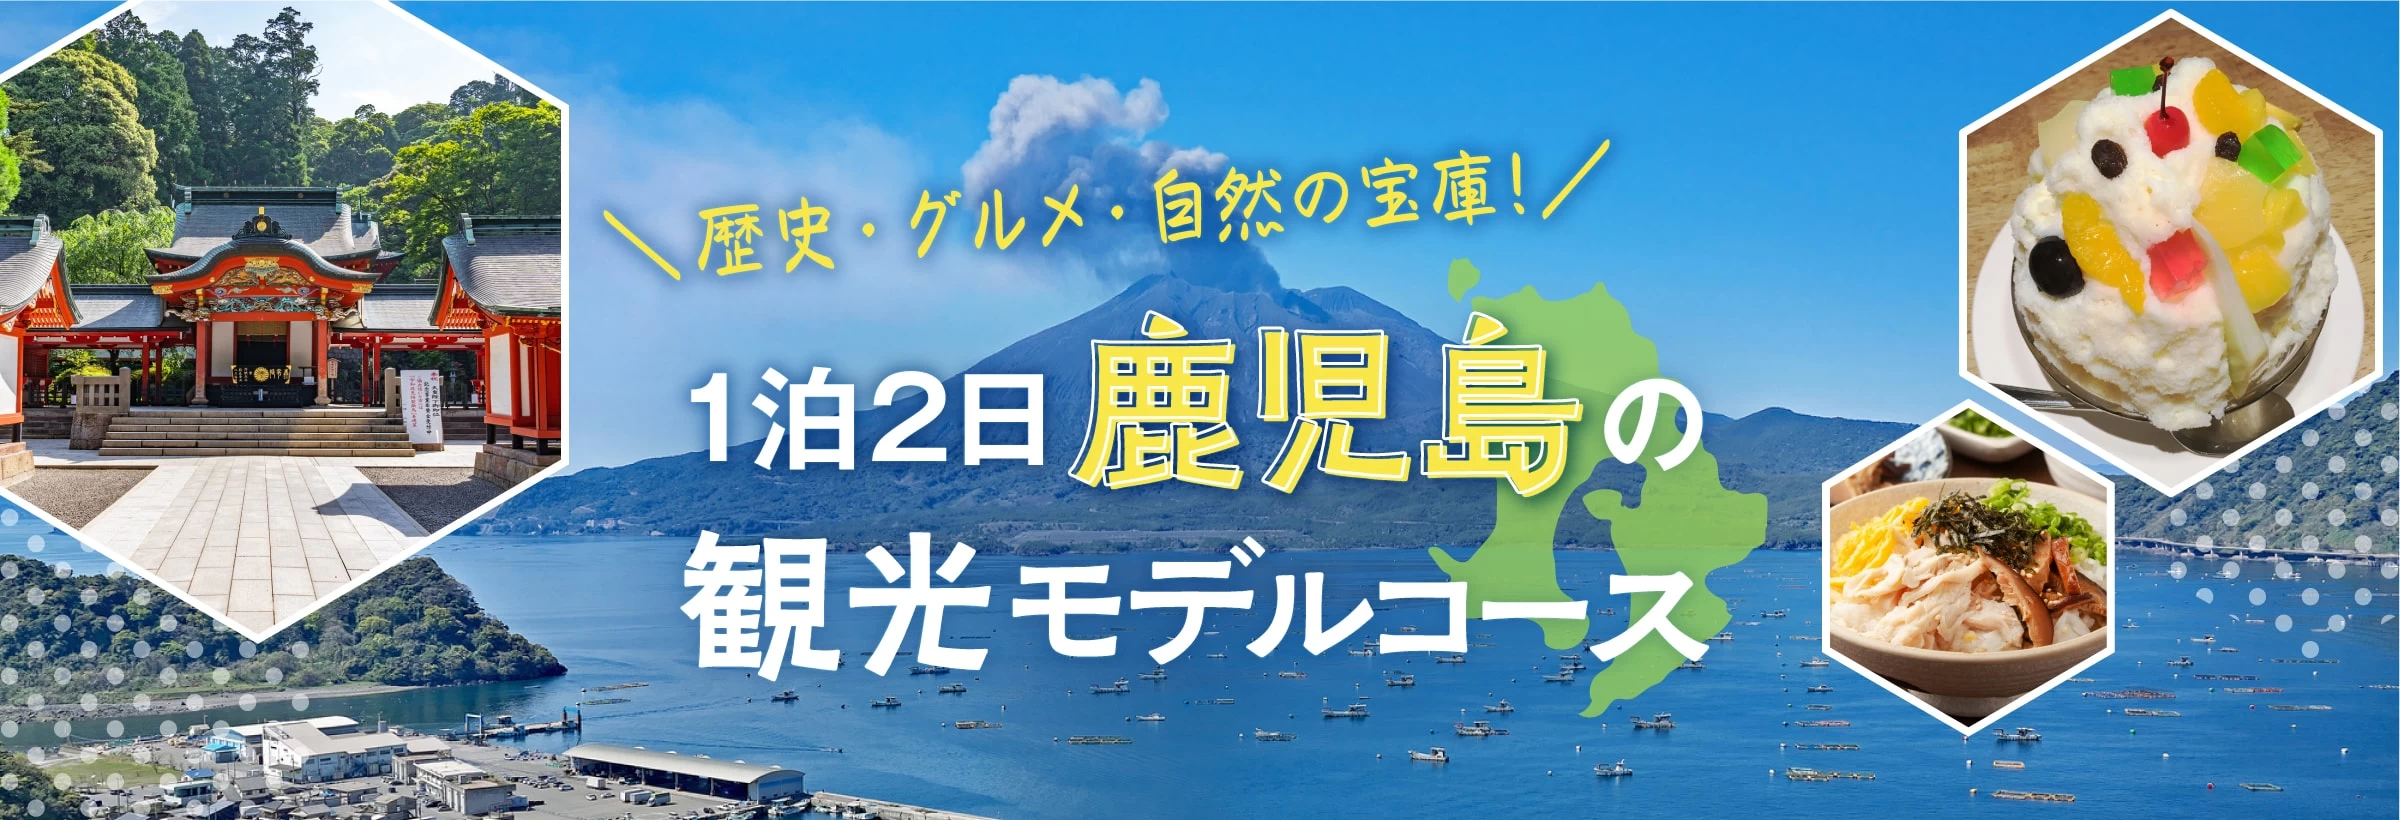 東京から飛行機で2時間、実は短時間で行ける「鹿児島県」。 歴史豊かな「霧島神宮」や雄大な自然が息づく「屋久島」、悠然と煙を吹く「桜島」にみんな大好き「白くま氷」など、見どころやグルメがいっぱい！ 九州周遊の旅先にもピッタリな1泊2日のモデルコースをご紹介します。